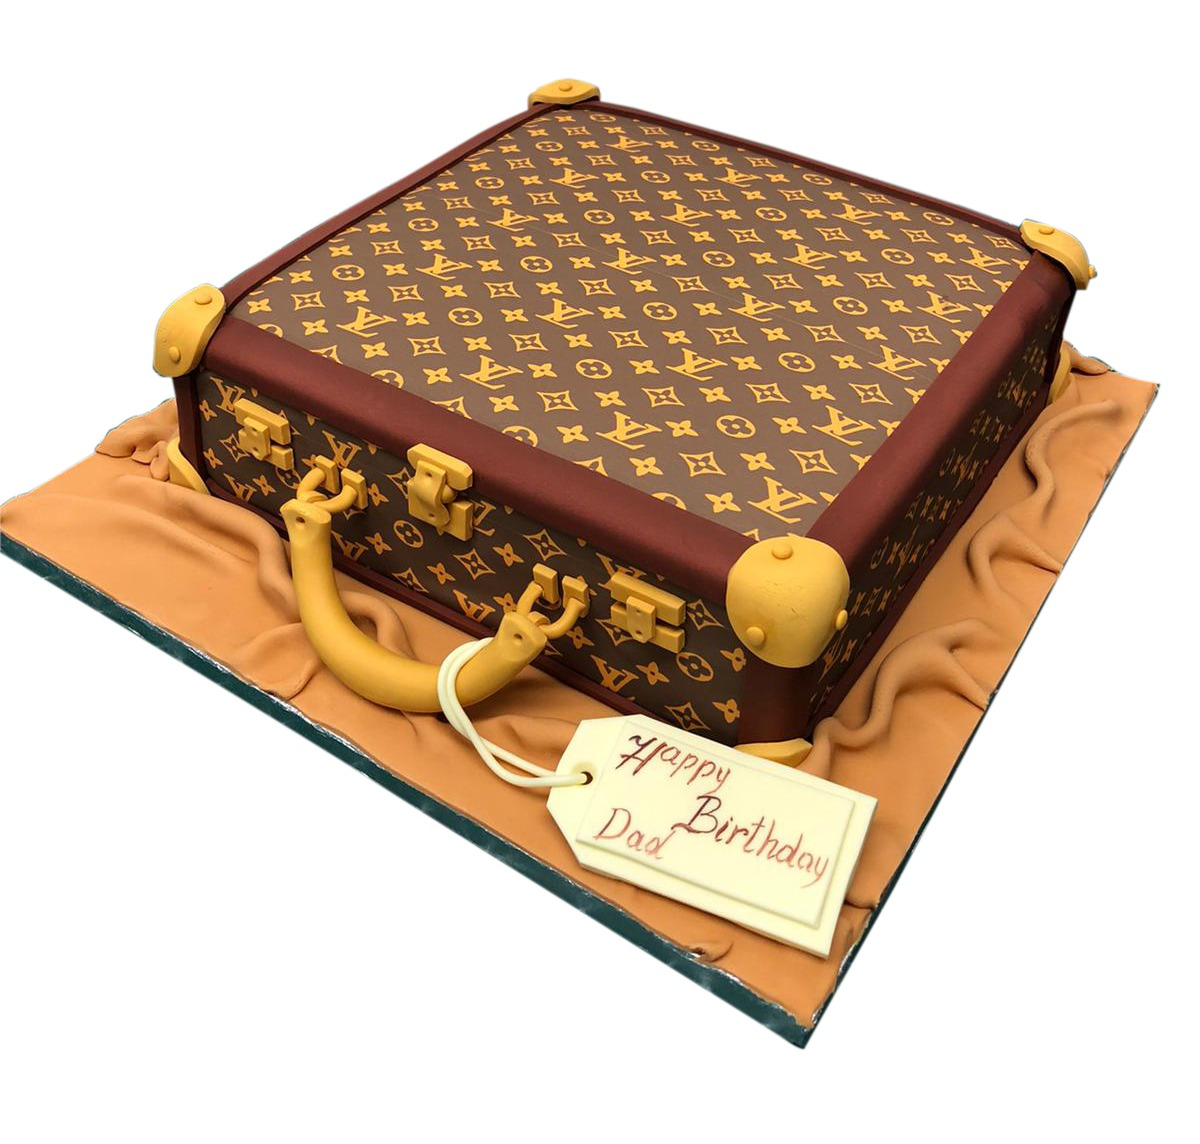 1302 – Louis Vuitton Handbag – Wedding Cakes, Fresh Bakery